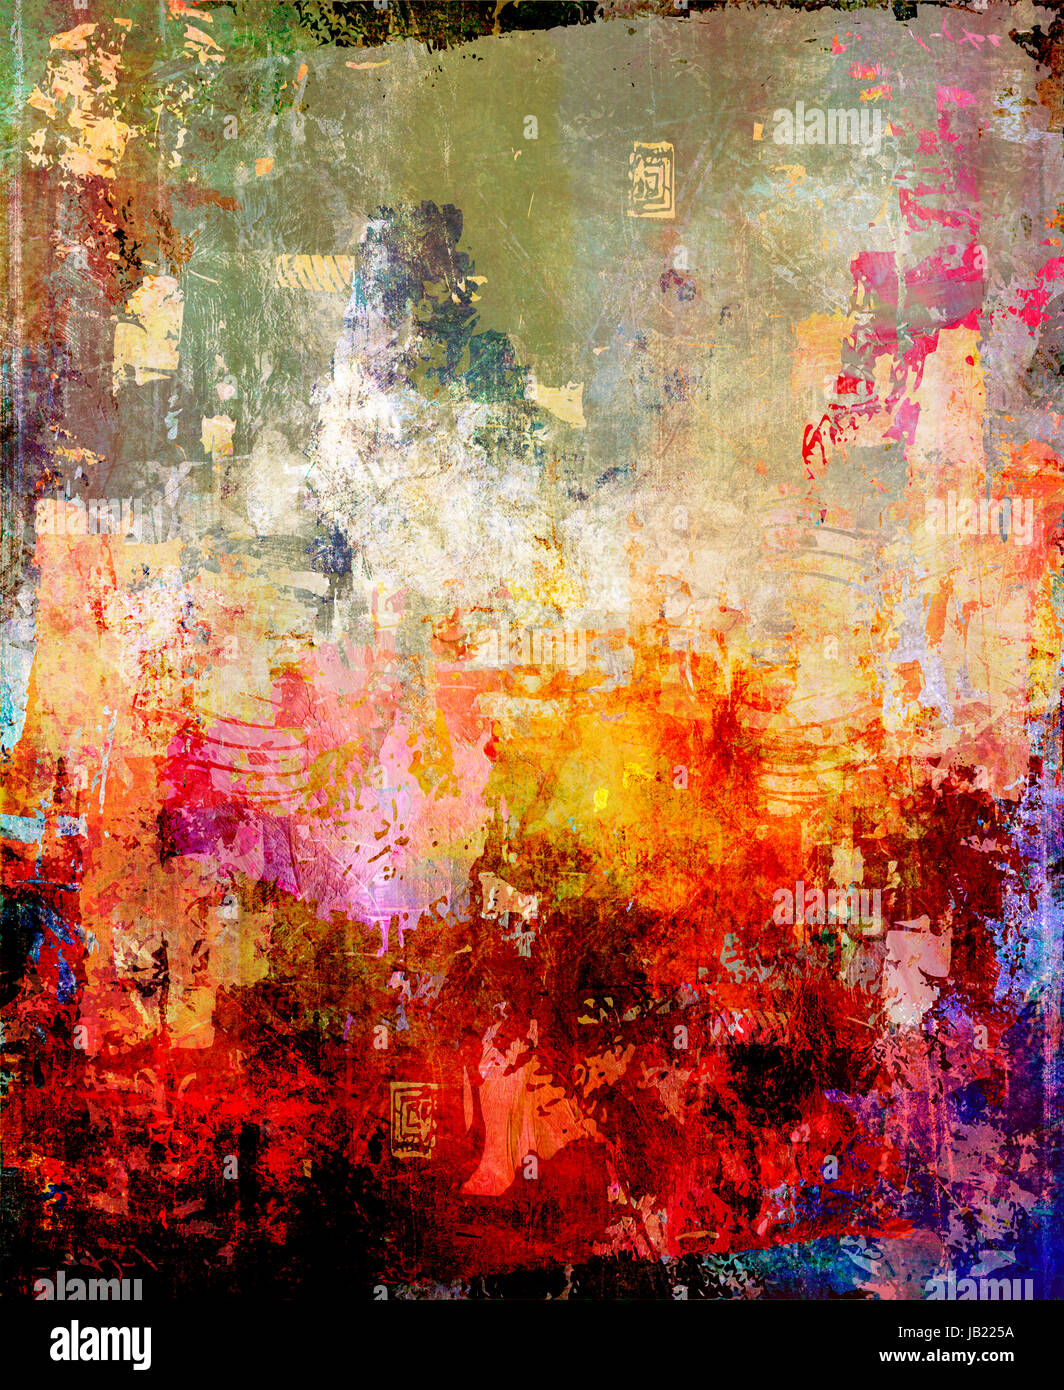 abstrakte malerei-texturen mischtechnik Stock Photo - Alamy